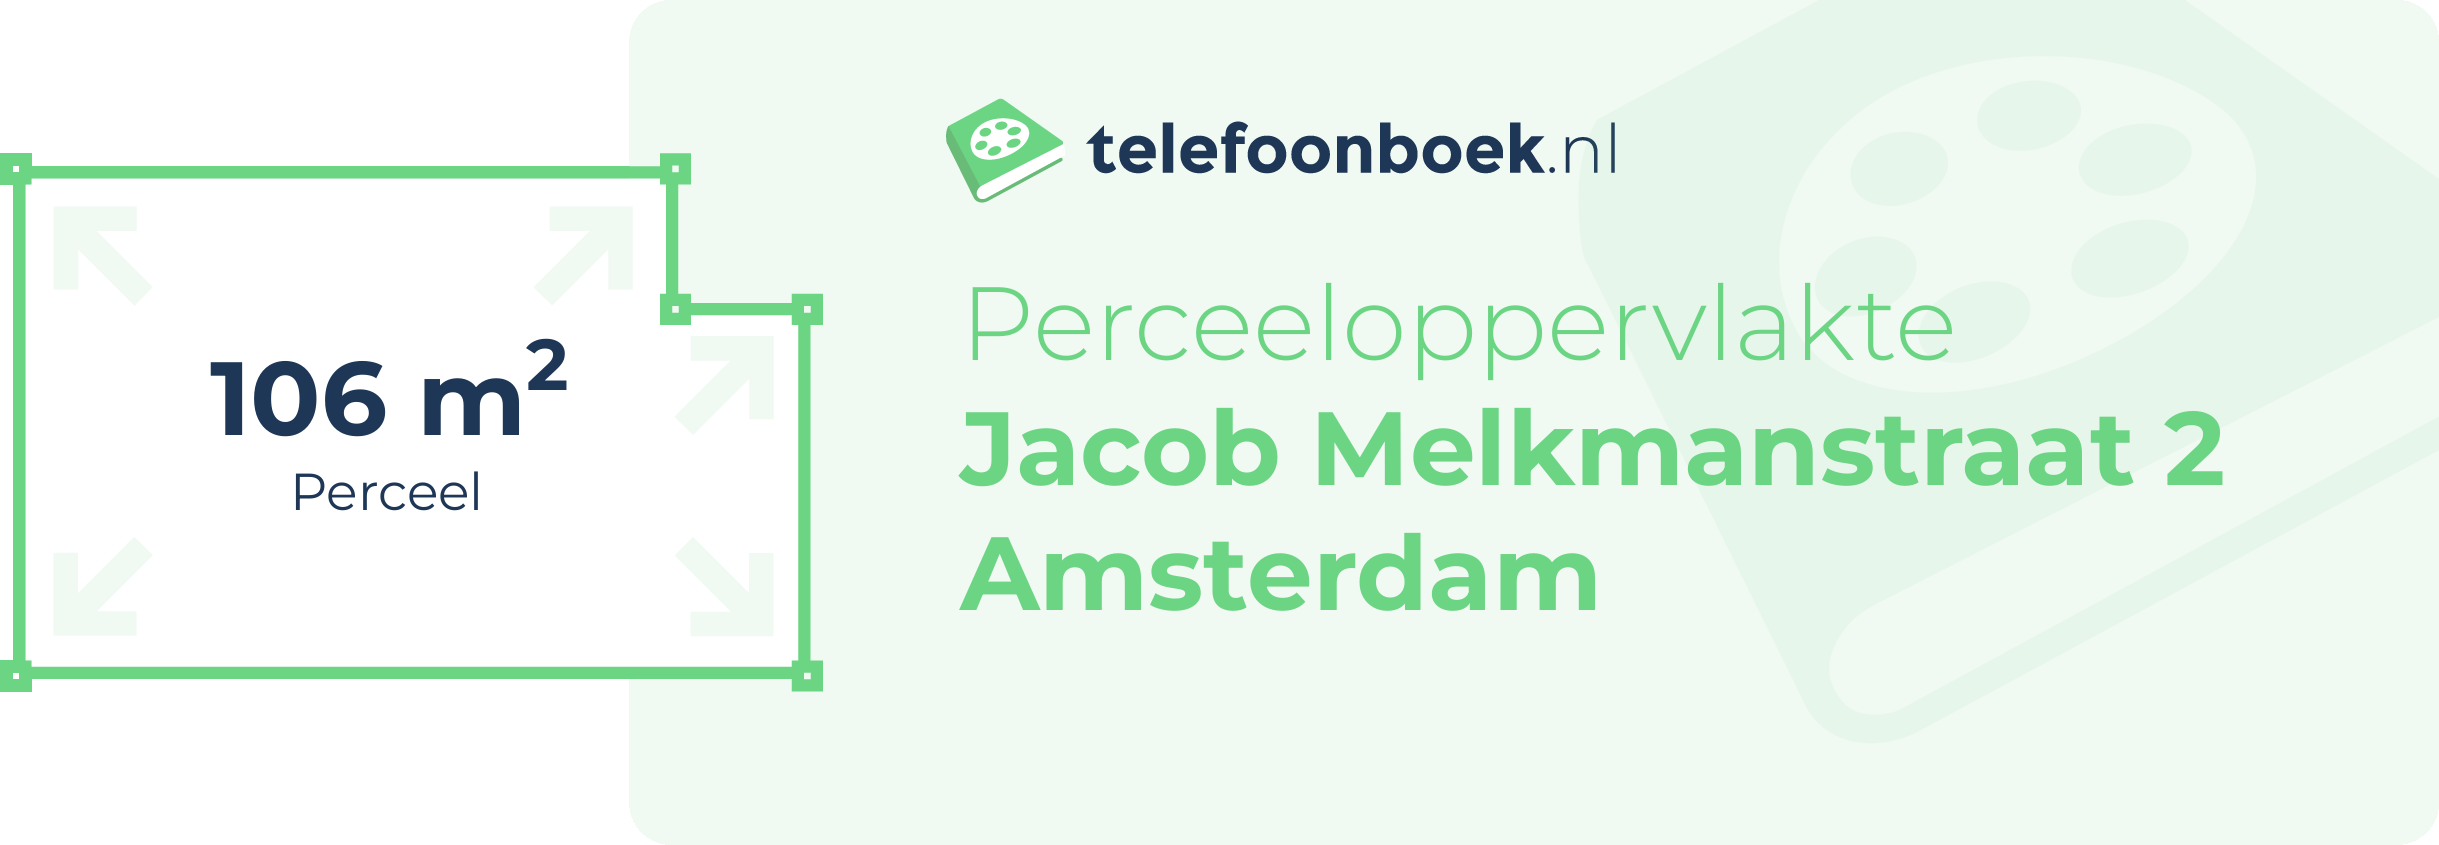 Perceeloppervlakte Jacob Melkmanstraat 2 Amsterdam